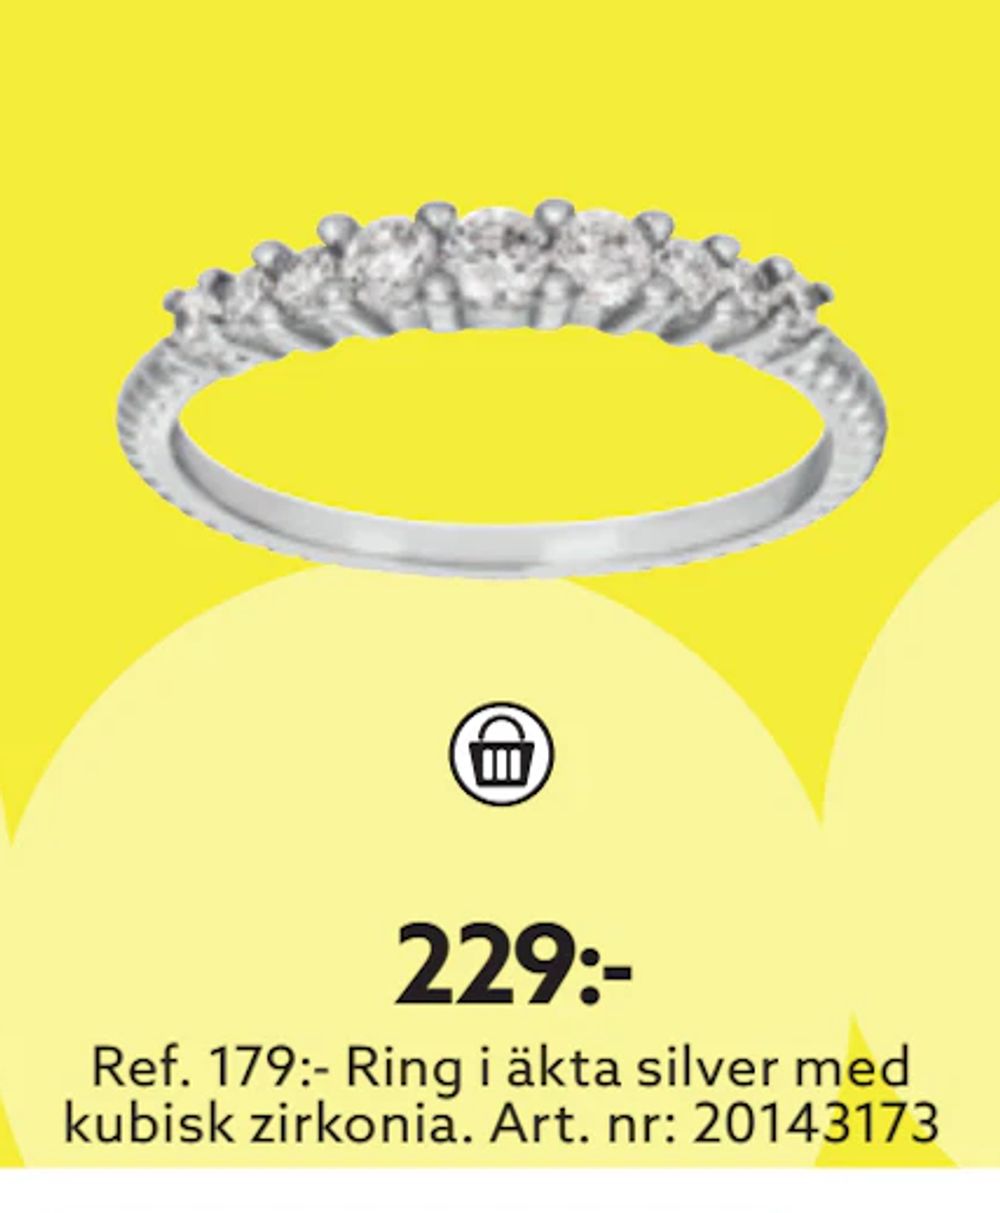 Erbjudanden på Ref. 179:- Ring i äkta silver med kubisk zirkonia från Albrekts guld för 229 kr